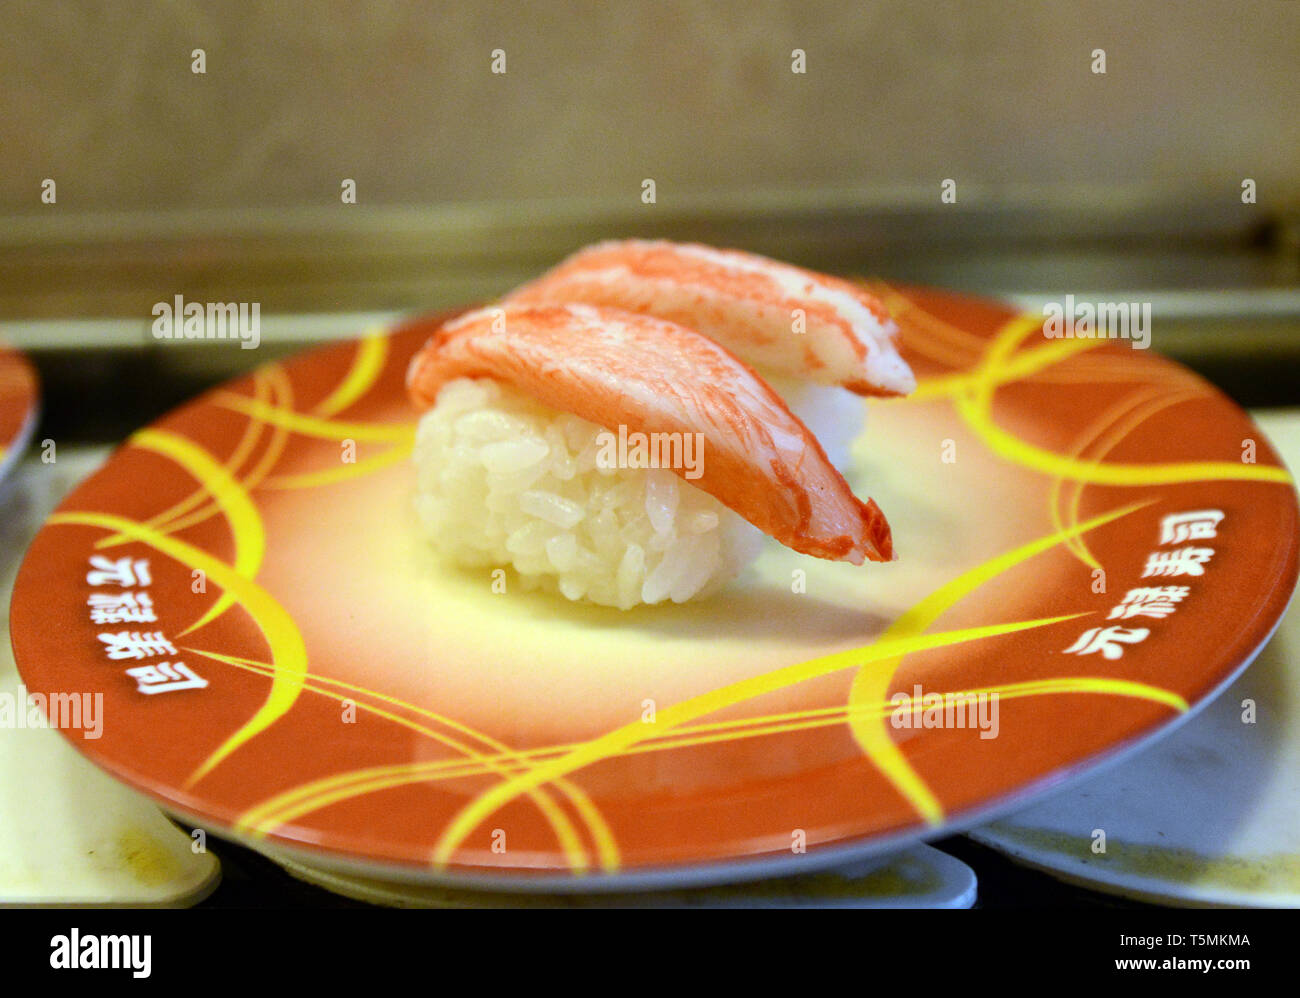 Raw fish sushi. Stock Photo